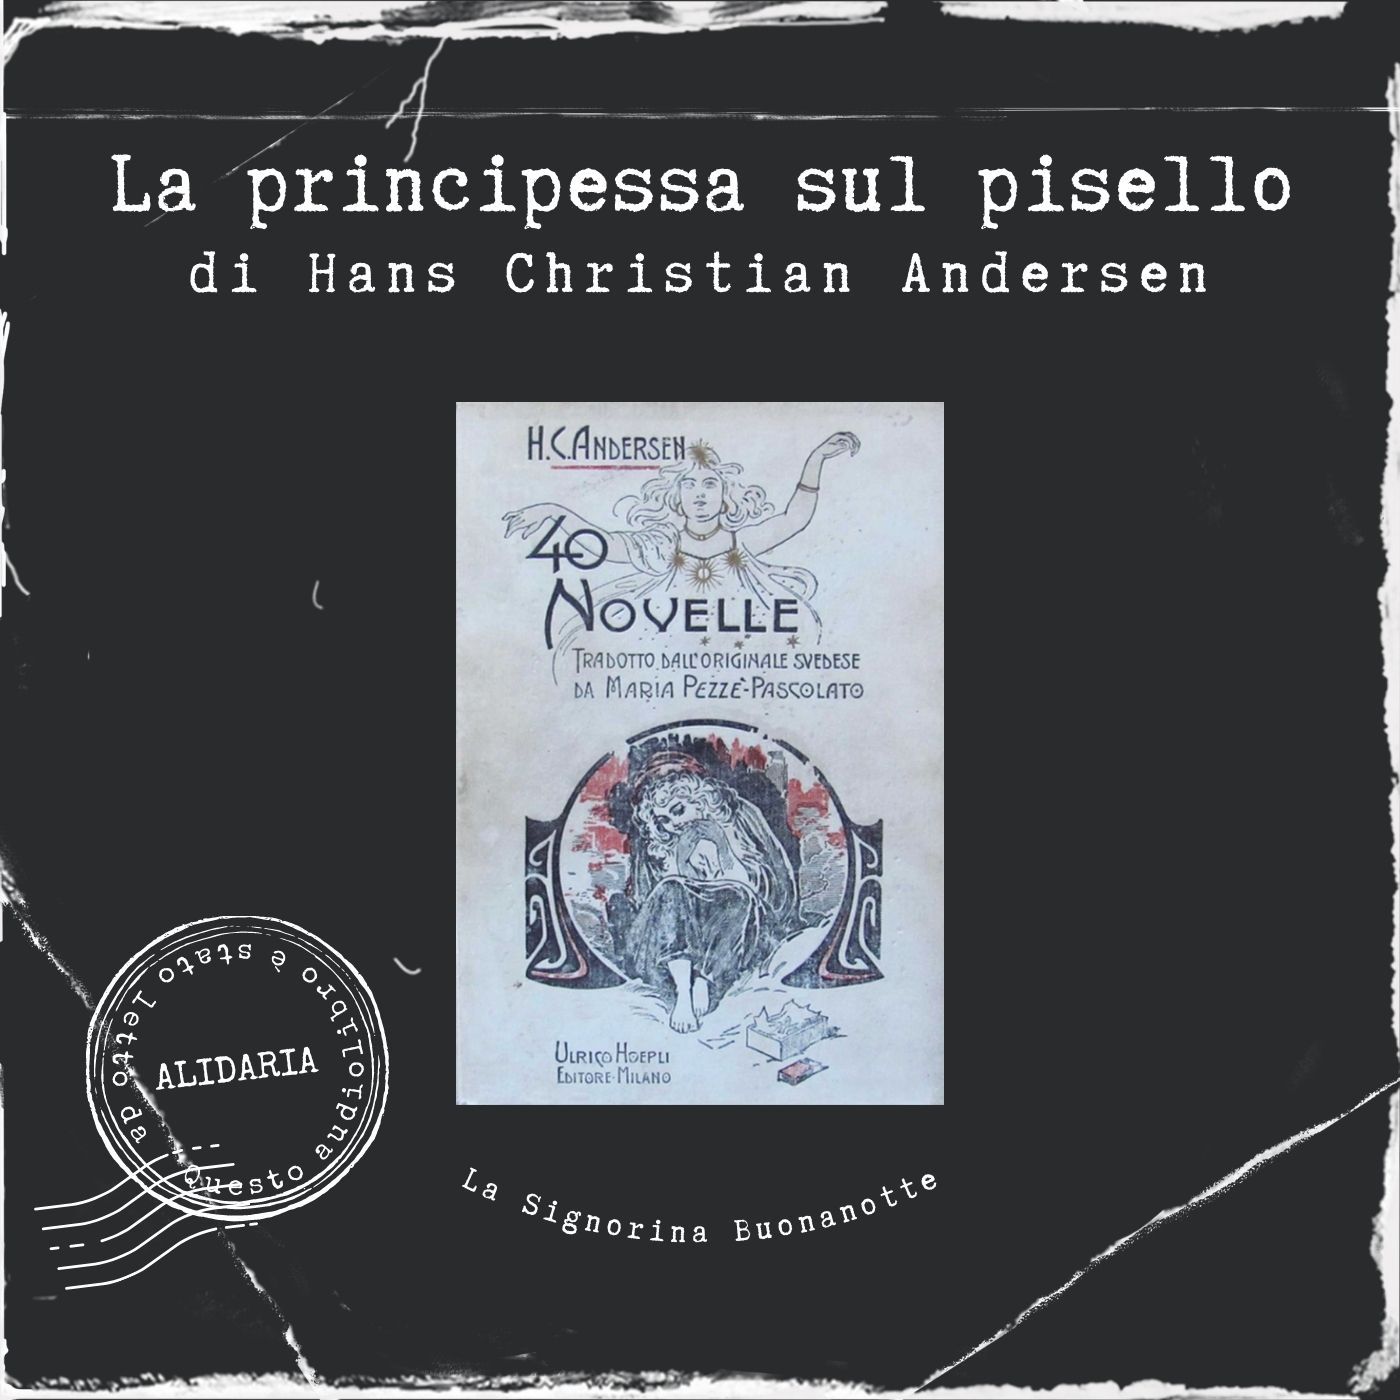 La principessa sul pisello: l'audiolibro delle novelle di Andersen